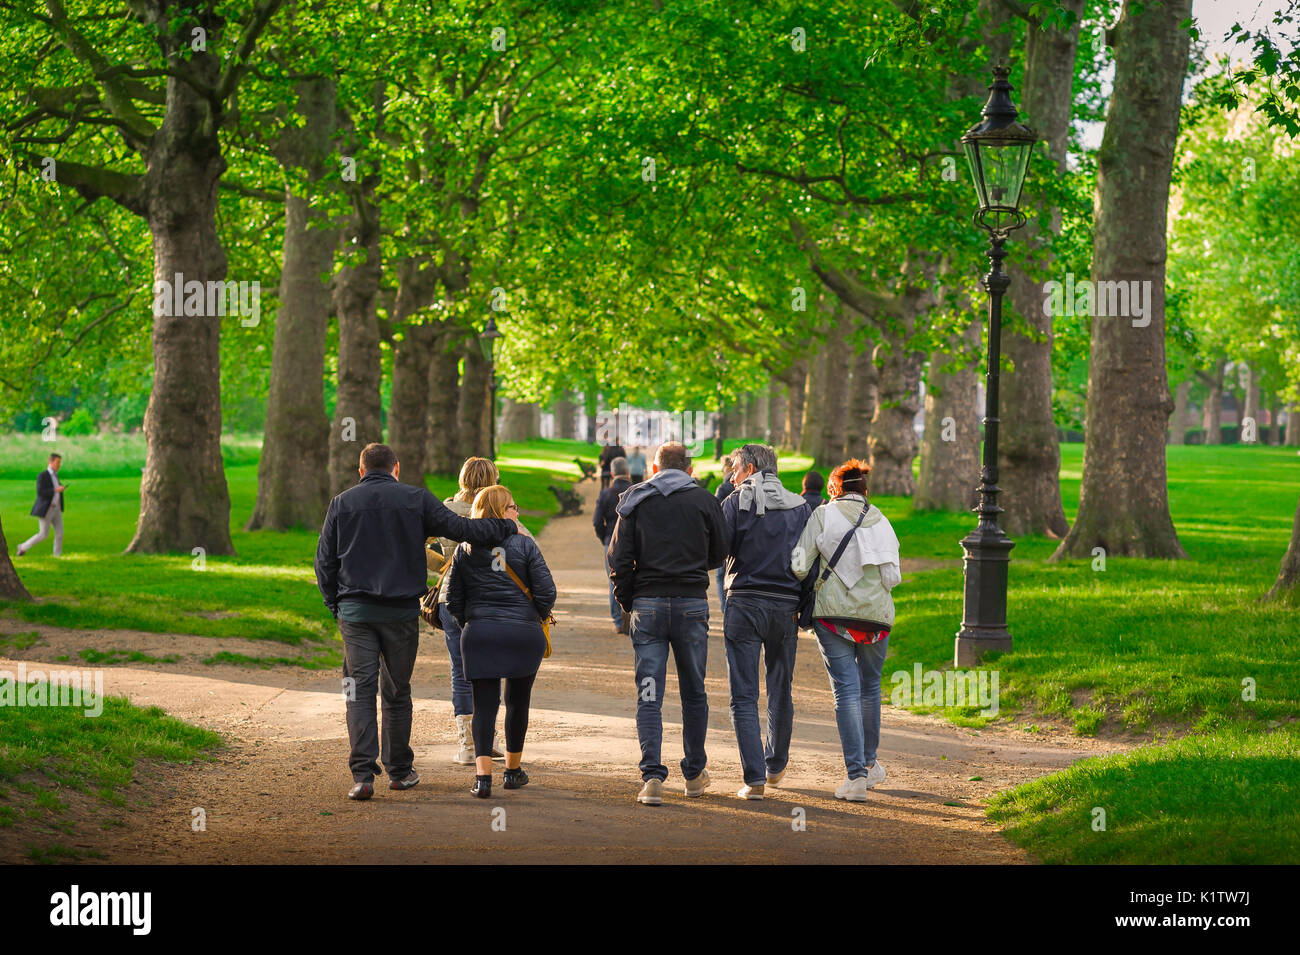 Freunde zusammen spazieren, Blick auf eine Gruppe von Freunden mittleren Alters, die an einem Sommernachmittag durch den Green Park im Zentrum Londons schlendern, England, Großbritannien. Stockfoto